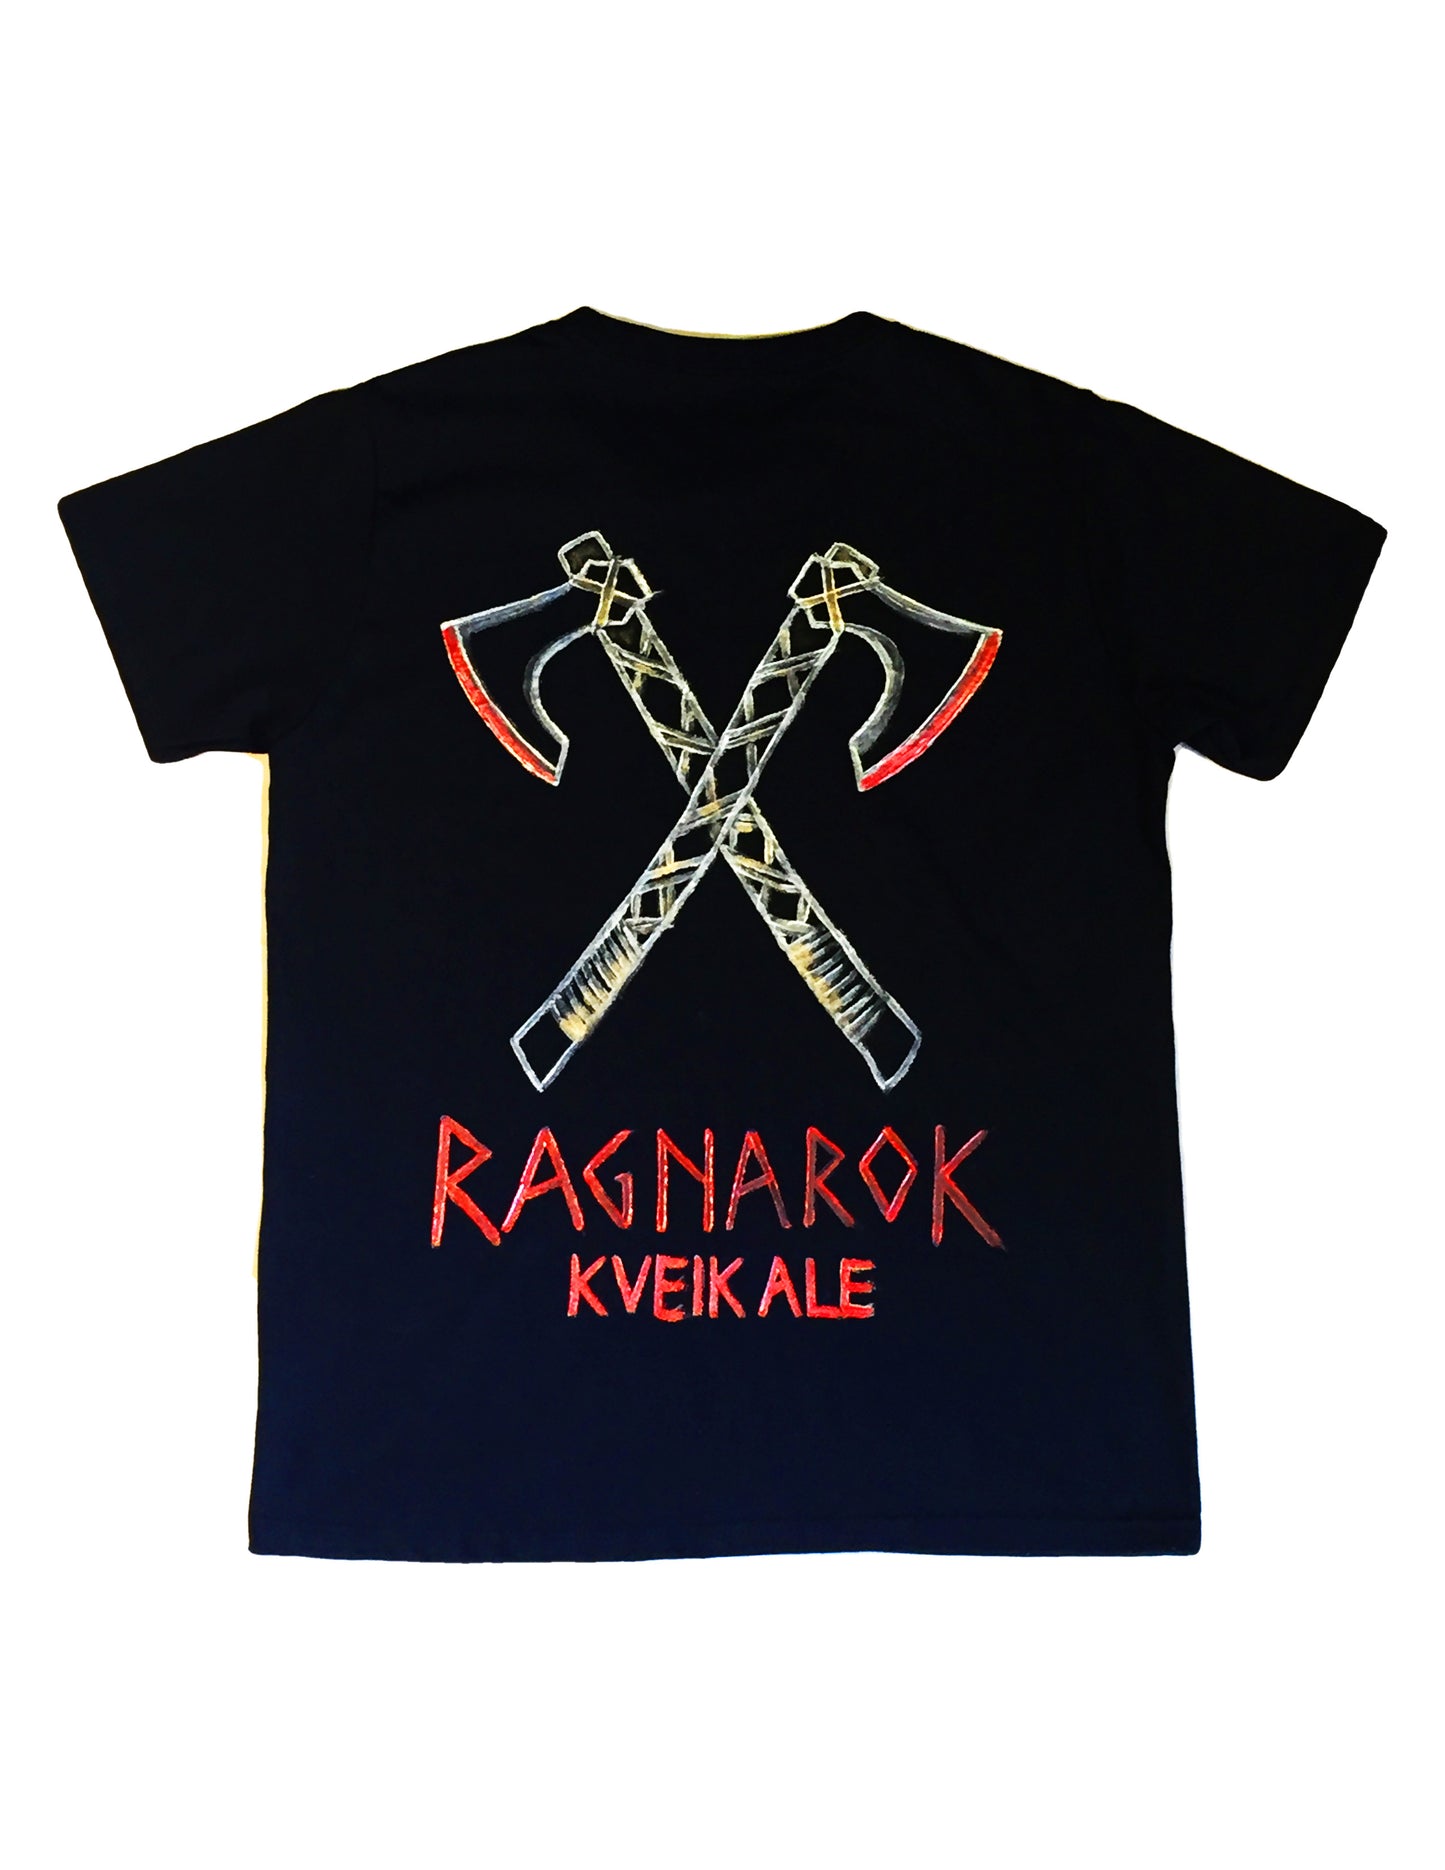 Viking T-Shirt | Ragnarok Kveik Ale Promotional Beer T-Shirt | Organic Cotton